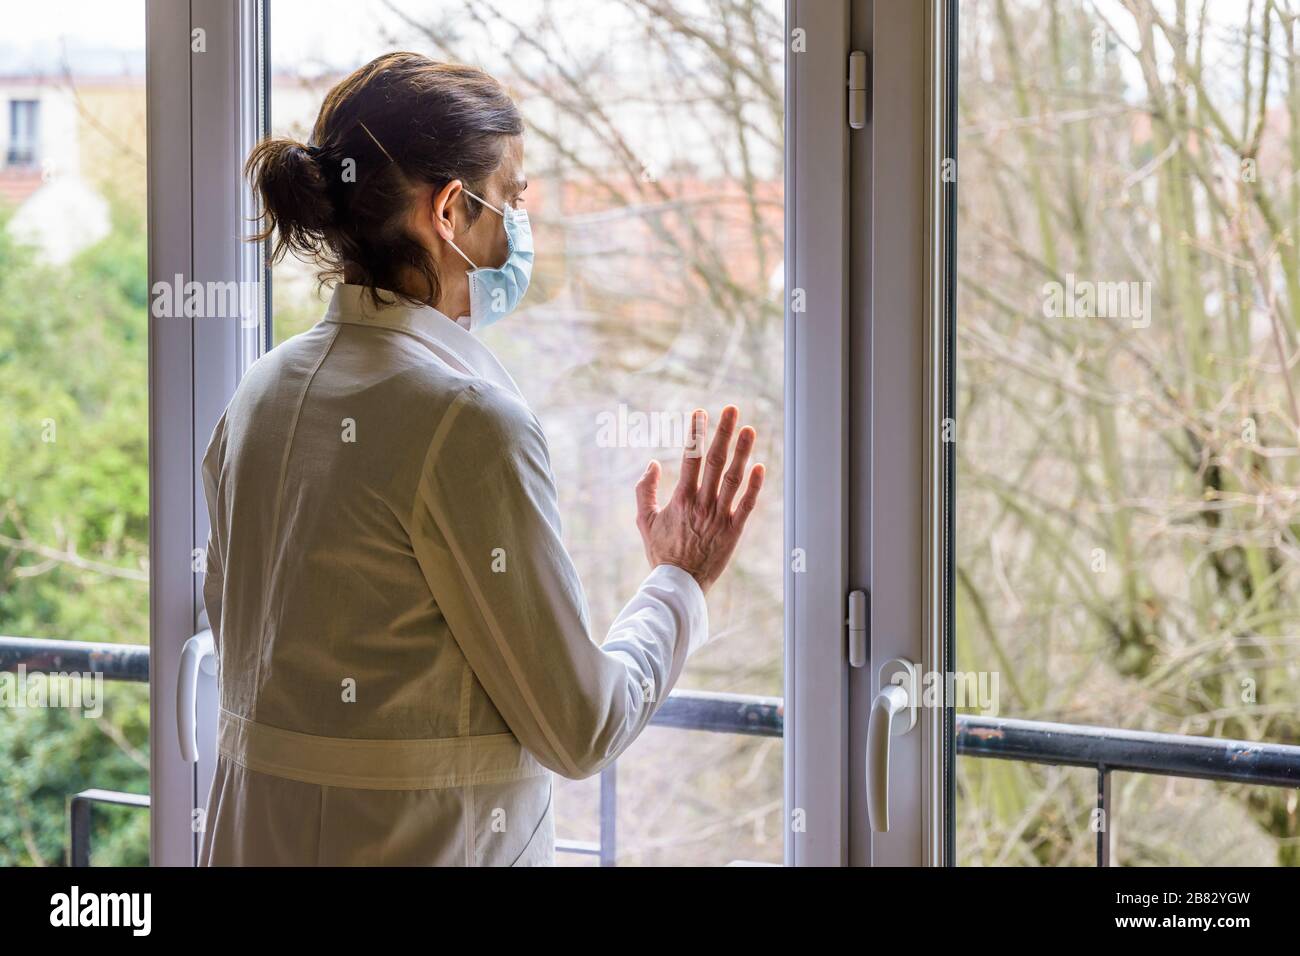 Un infermiere che indossa una maschera medica per il viso e un cappotto bianco, è in piedi inattivo davanti a una finestra chiusa, fissandosi nello spazio. Foto Stock